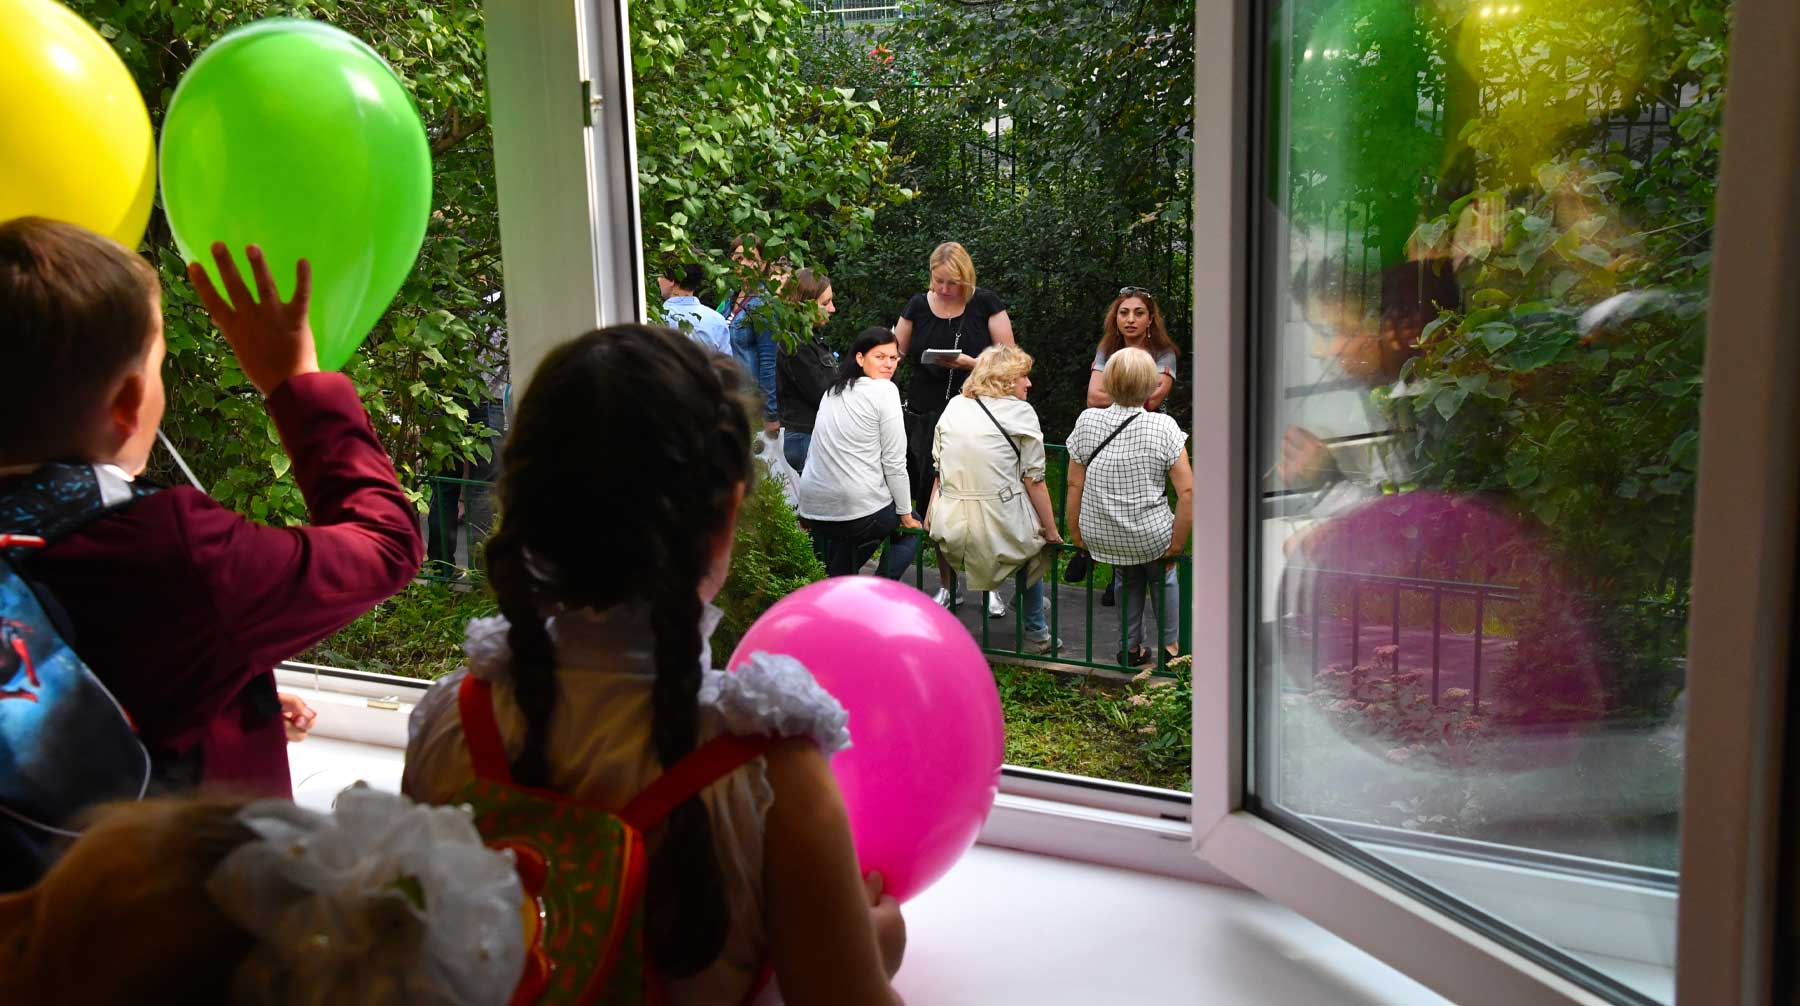 Собрать ребенка в школу слишком дорого для многих семей, отметил парламентарий от ЛДПР Фото: © GLOBAL LOOK press / Komsomolskaya Pravda